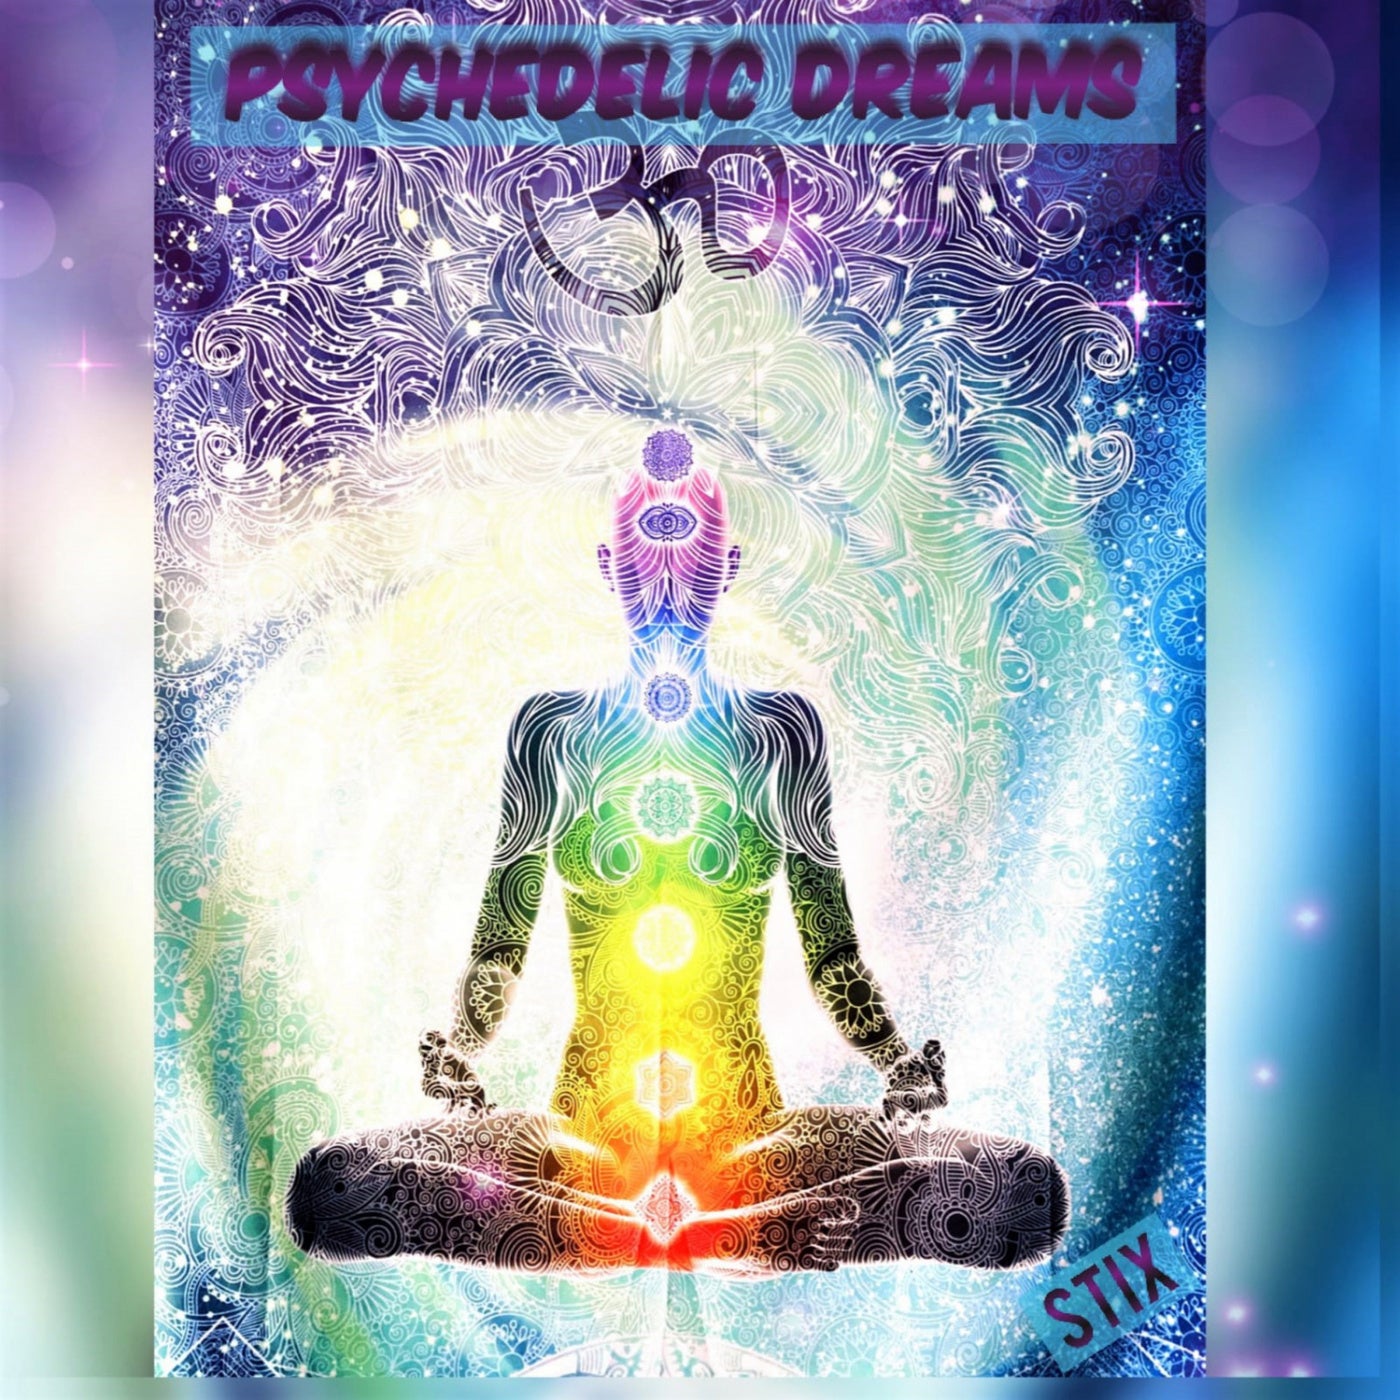 Psychedelic Dreams